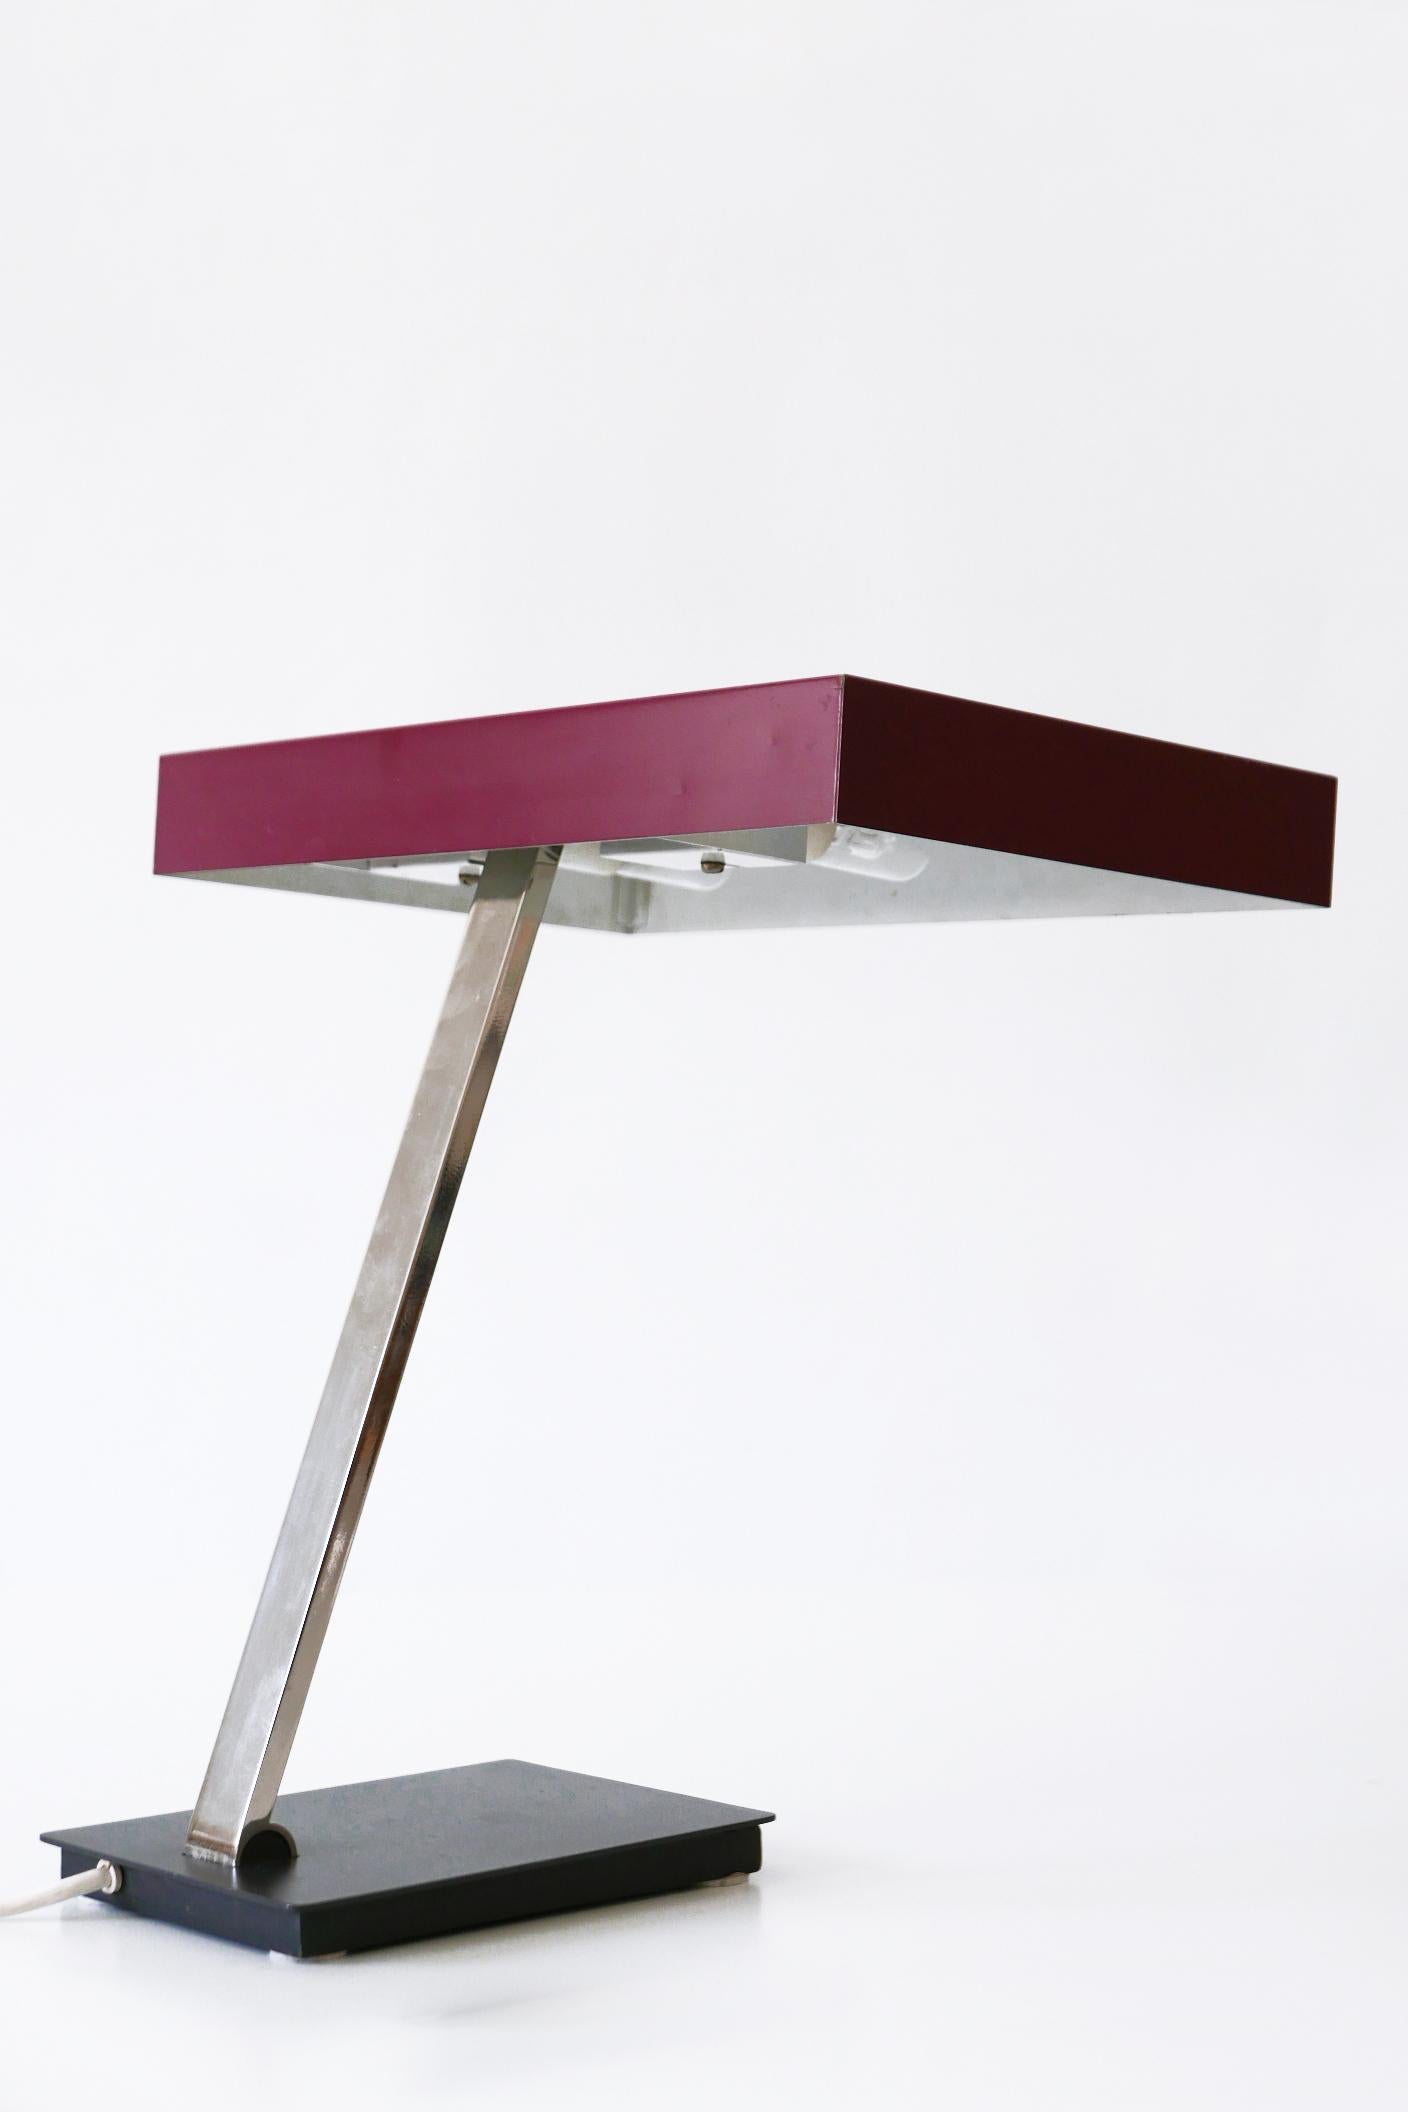 Luxury Mid-Century Modern President Table Lamp by Kaiser Leuchten 1960s Germany For Sale 8